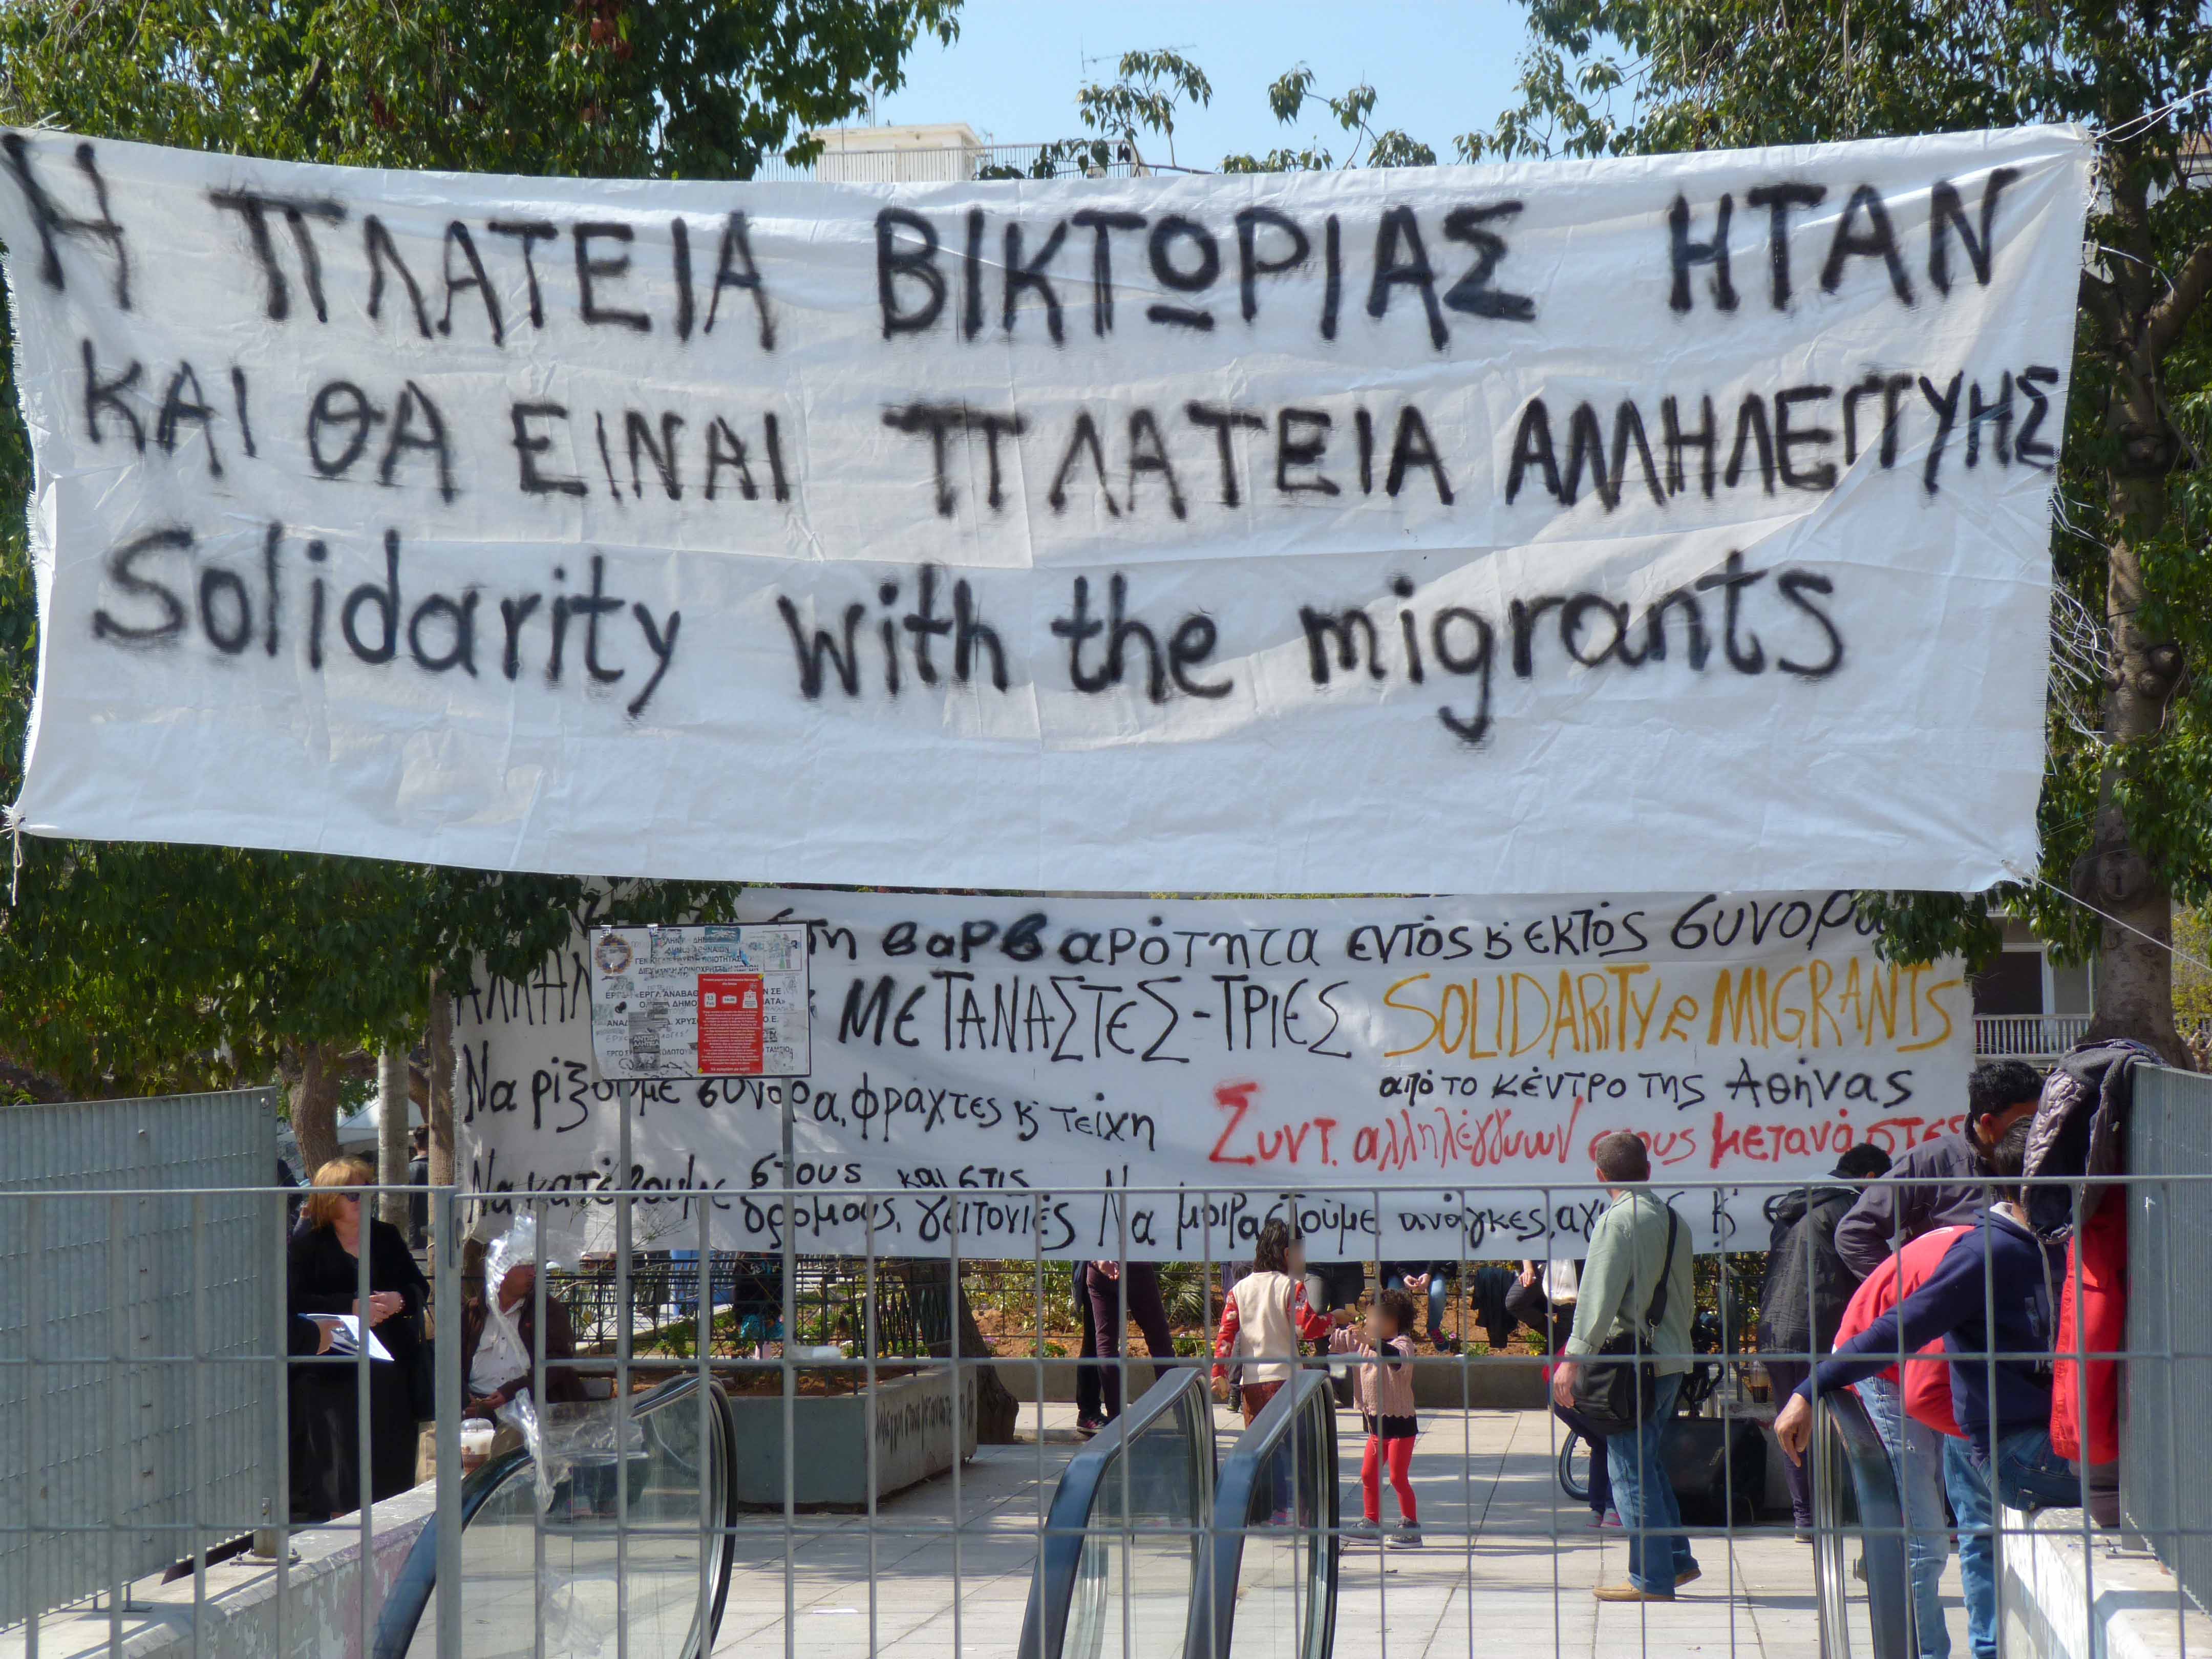 Αθήνα: Ενημέρωση από τη μικροφωνική παρέμβαση στην πλ. Βικτωρίας